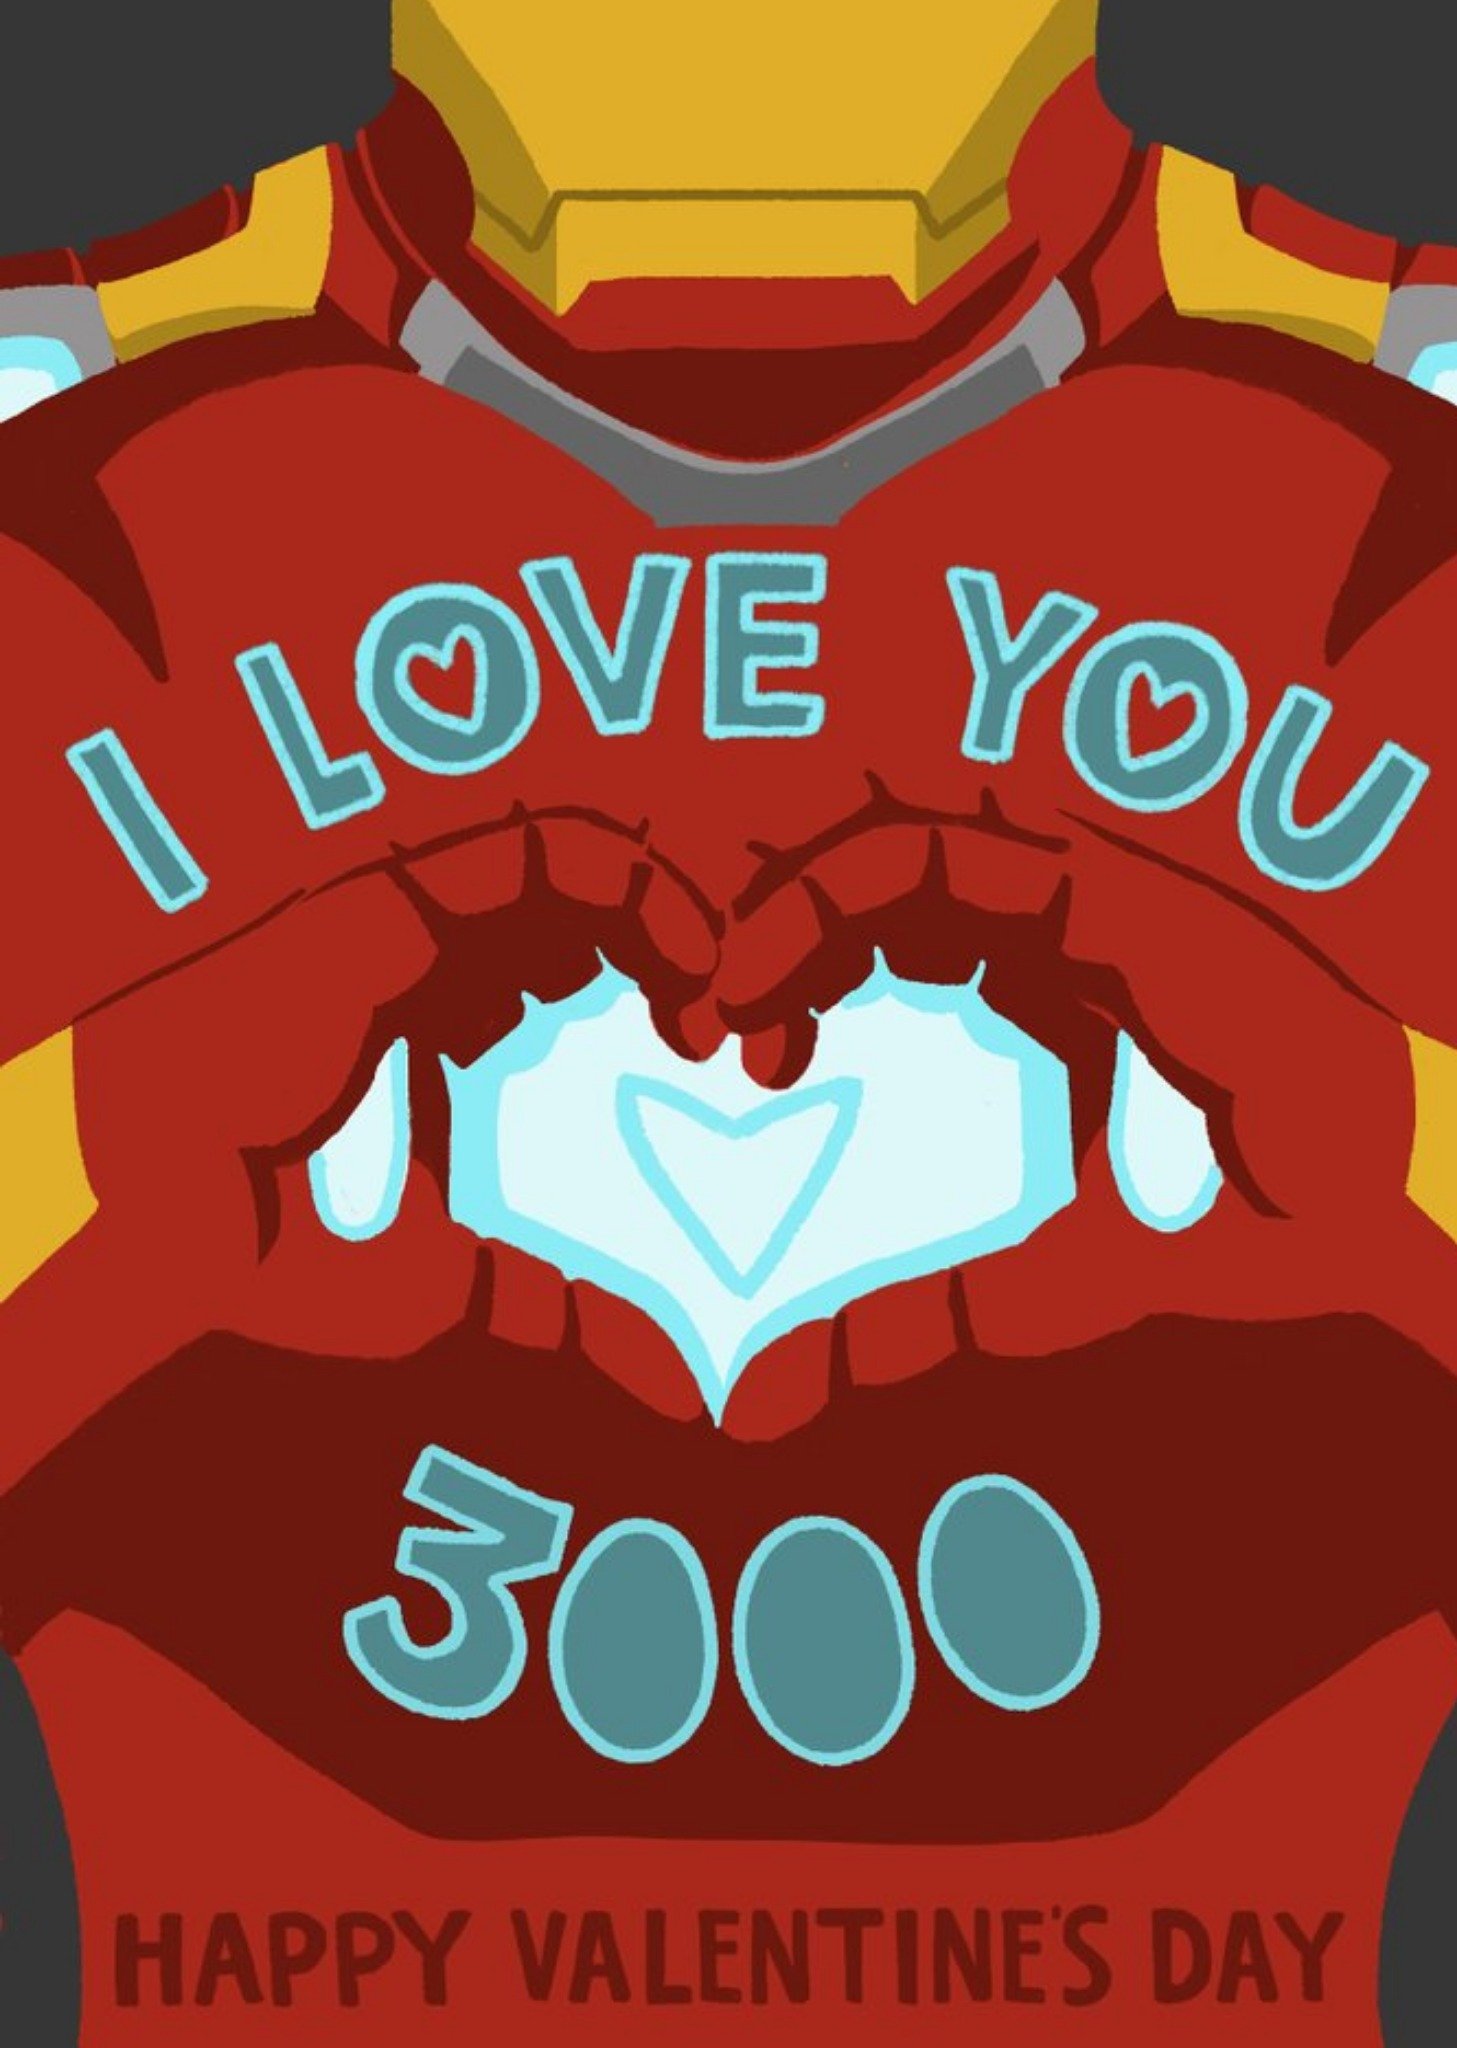 Disney Marvel Avengers Endgame I Love You 3000 Valentine's Day Card Ecard